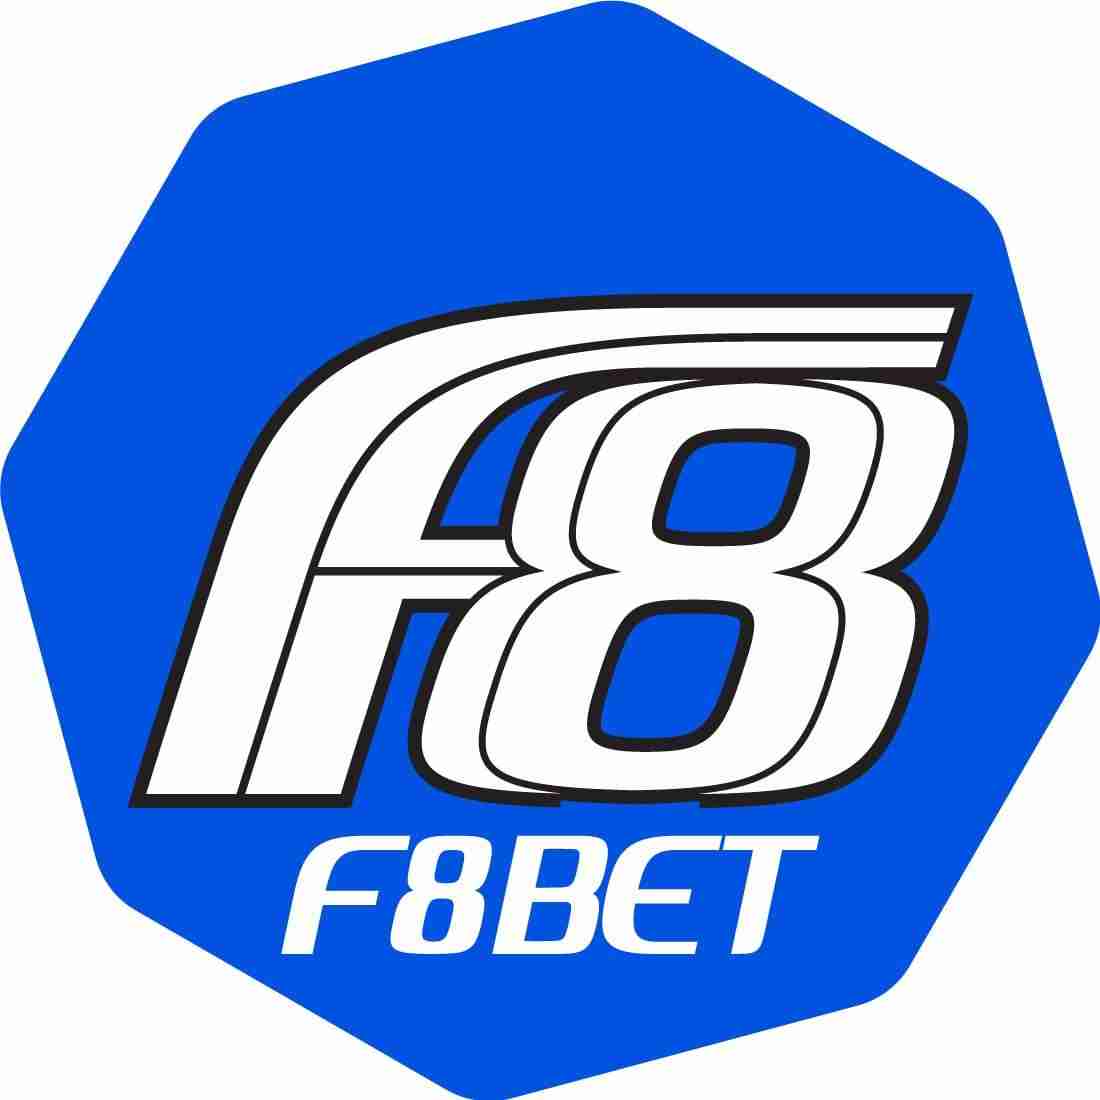 F8BET Nhà cái cá cược trực tuyến uy tí